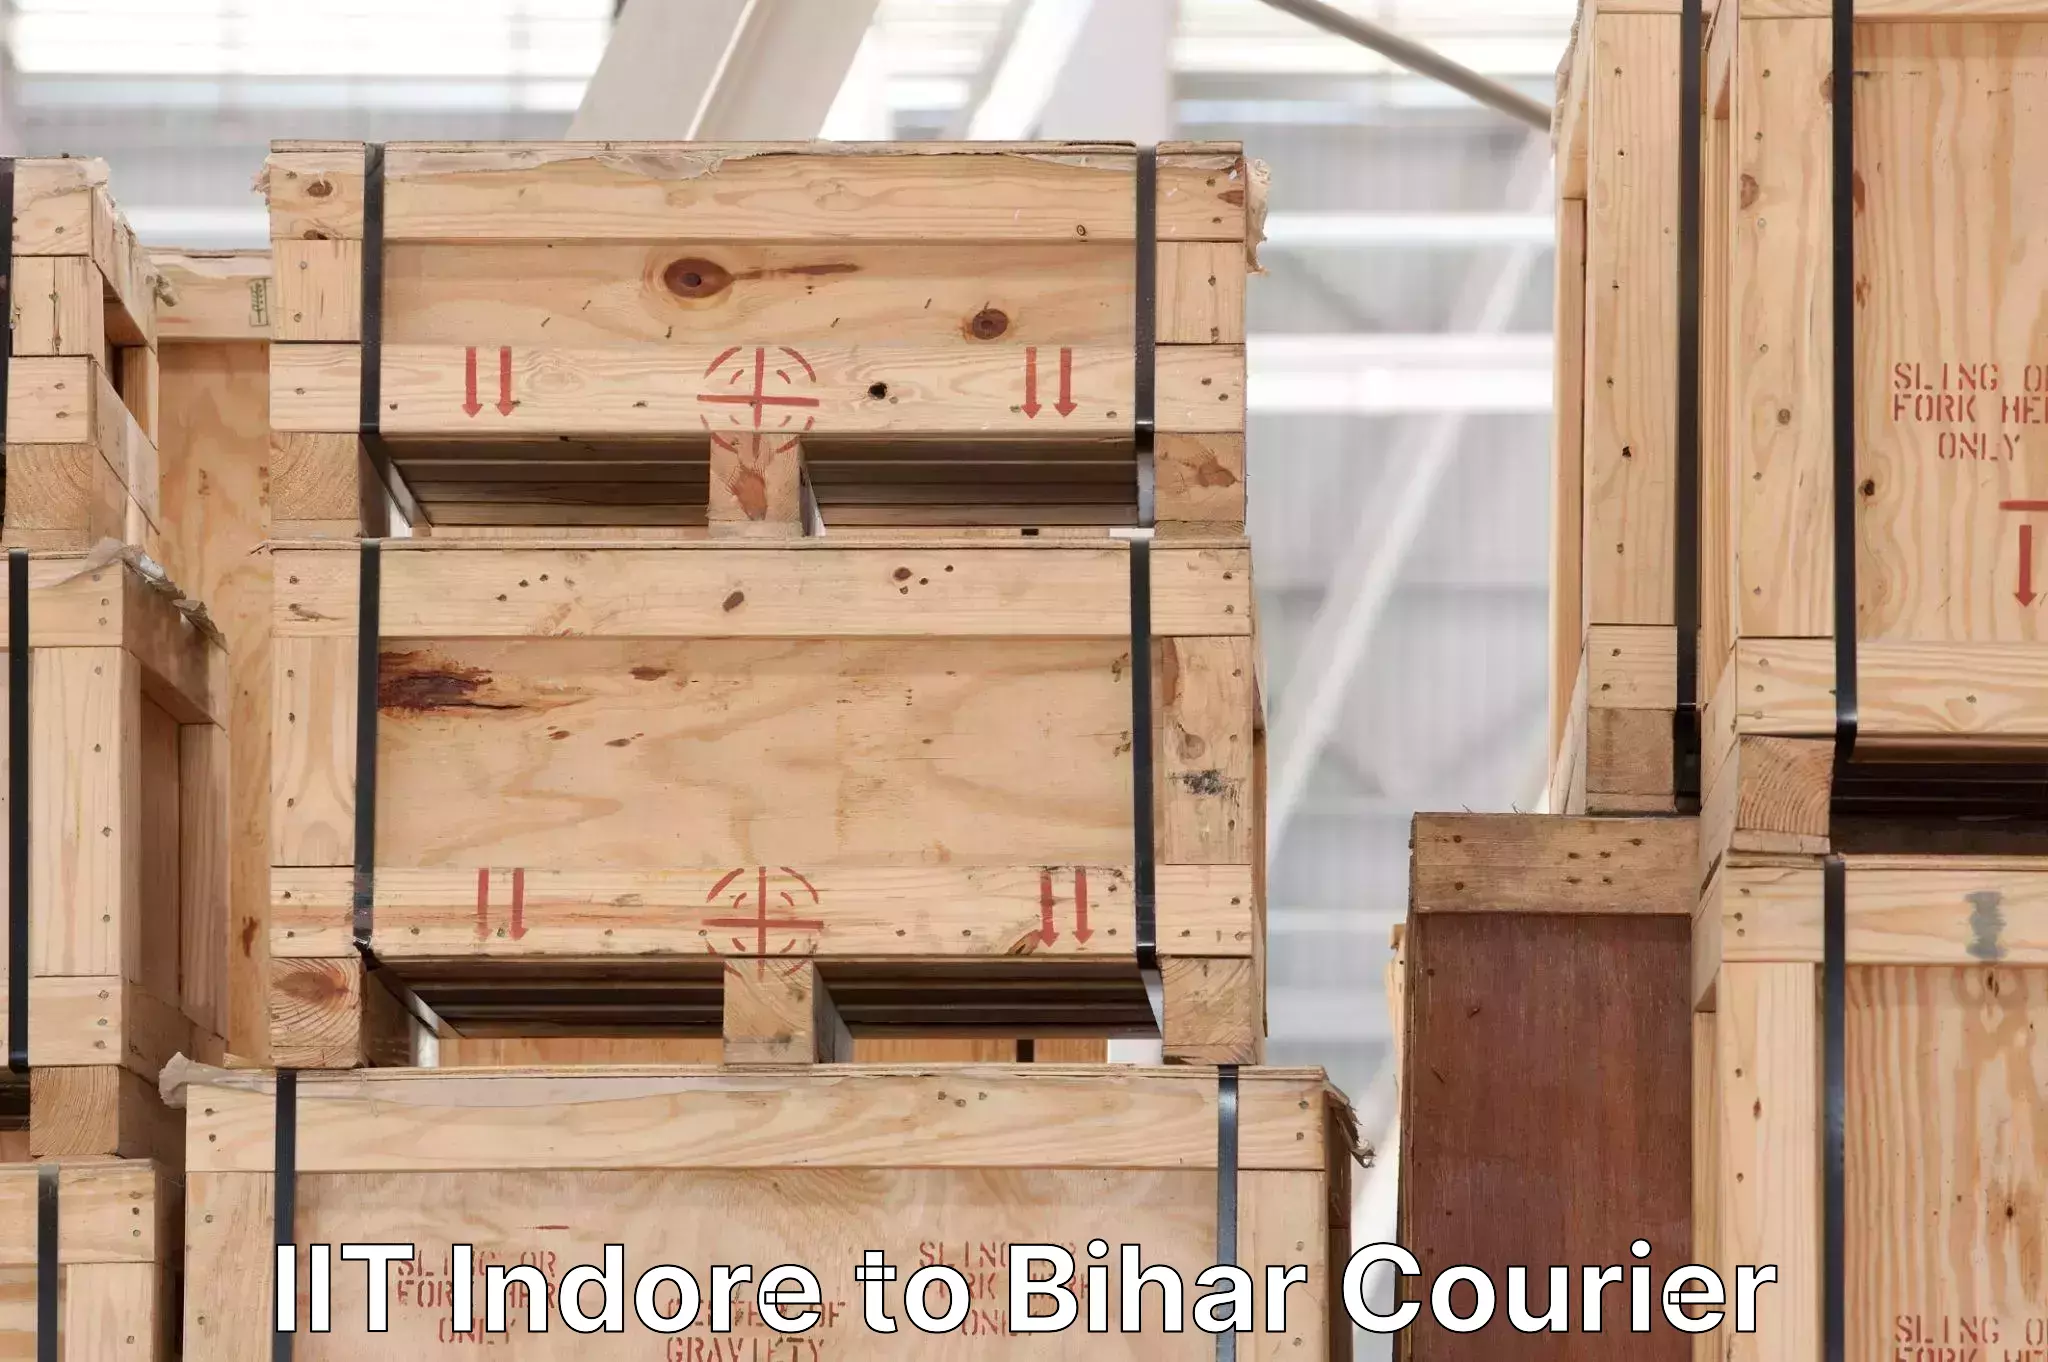 Express delivery capabilities IIT Indore to Bihar